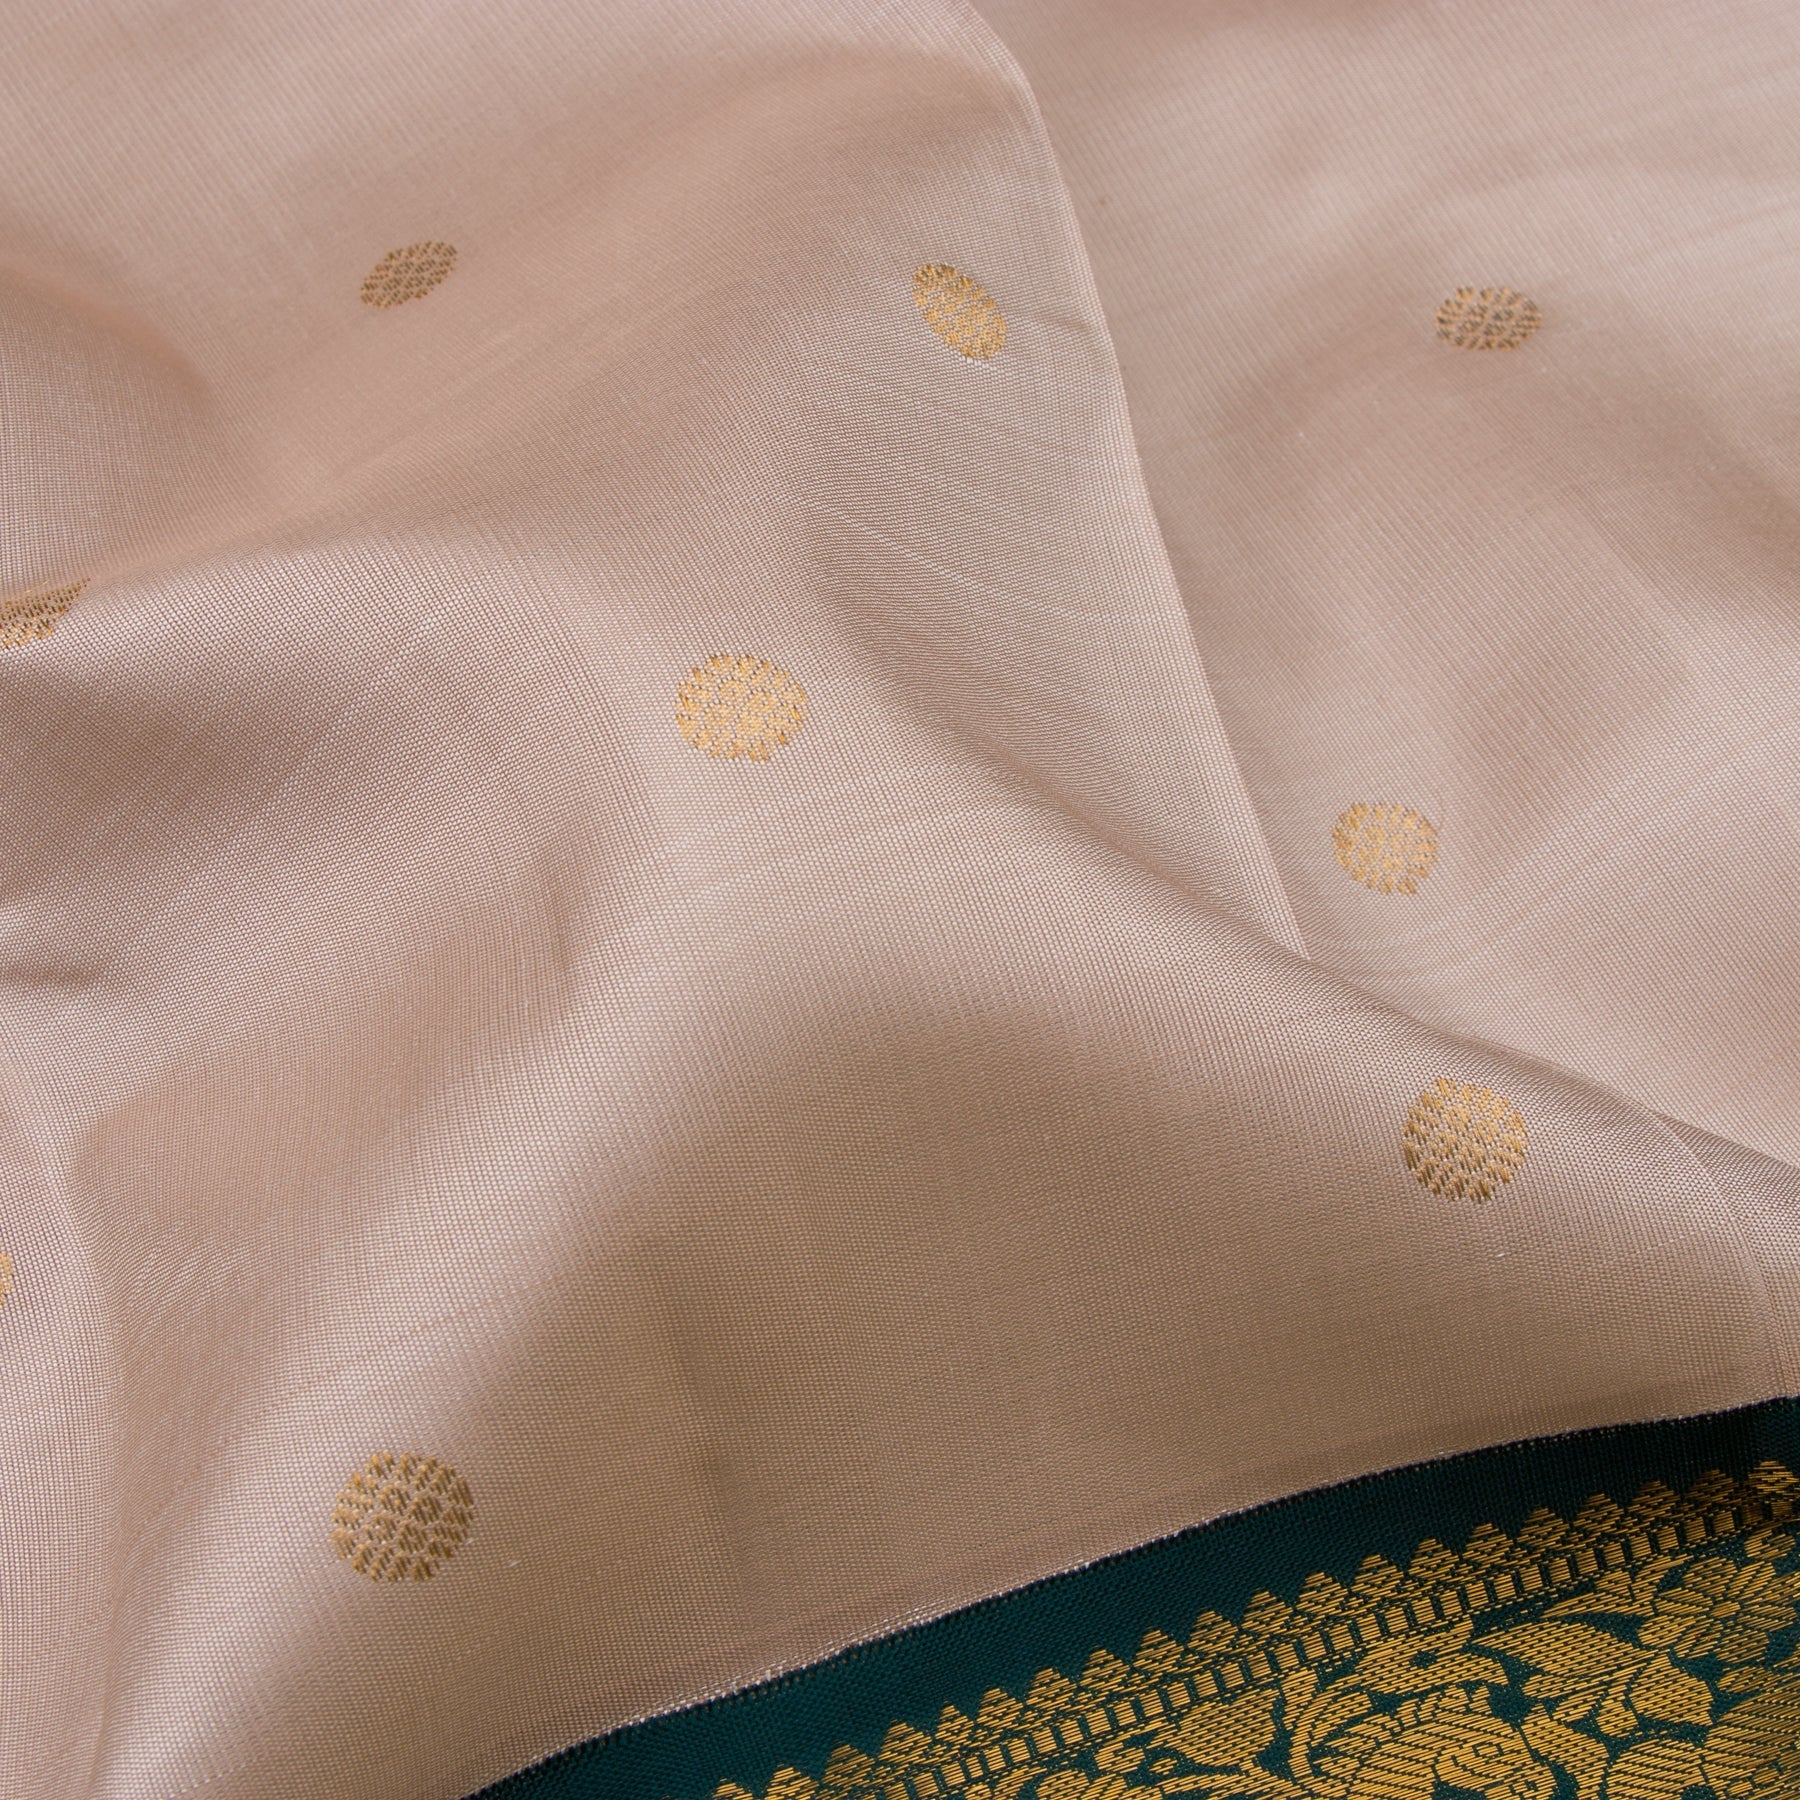 Kanakavalli Kanjivaram Silk Sari 22-110-HS001-09429 - Fabric View